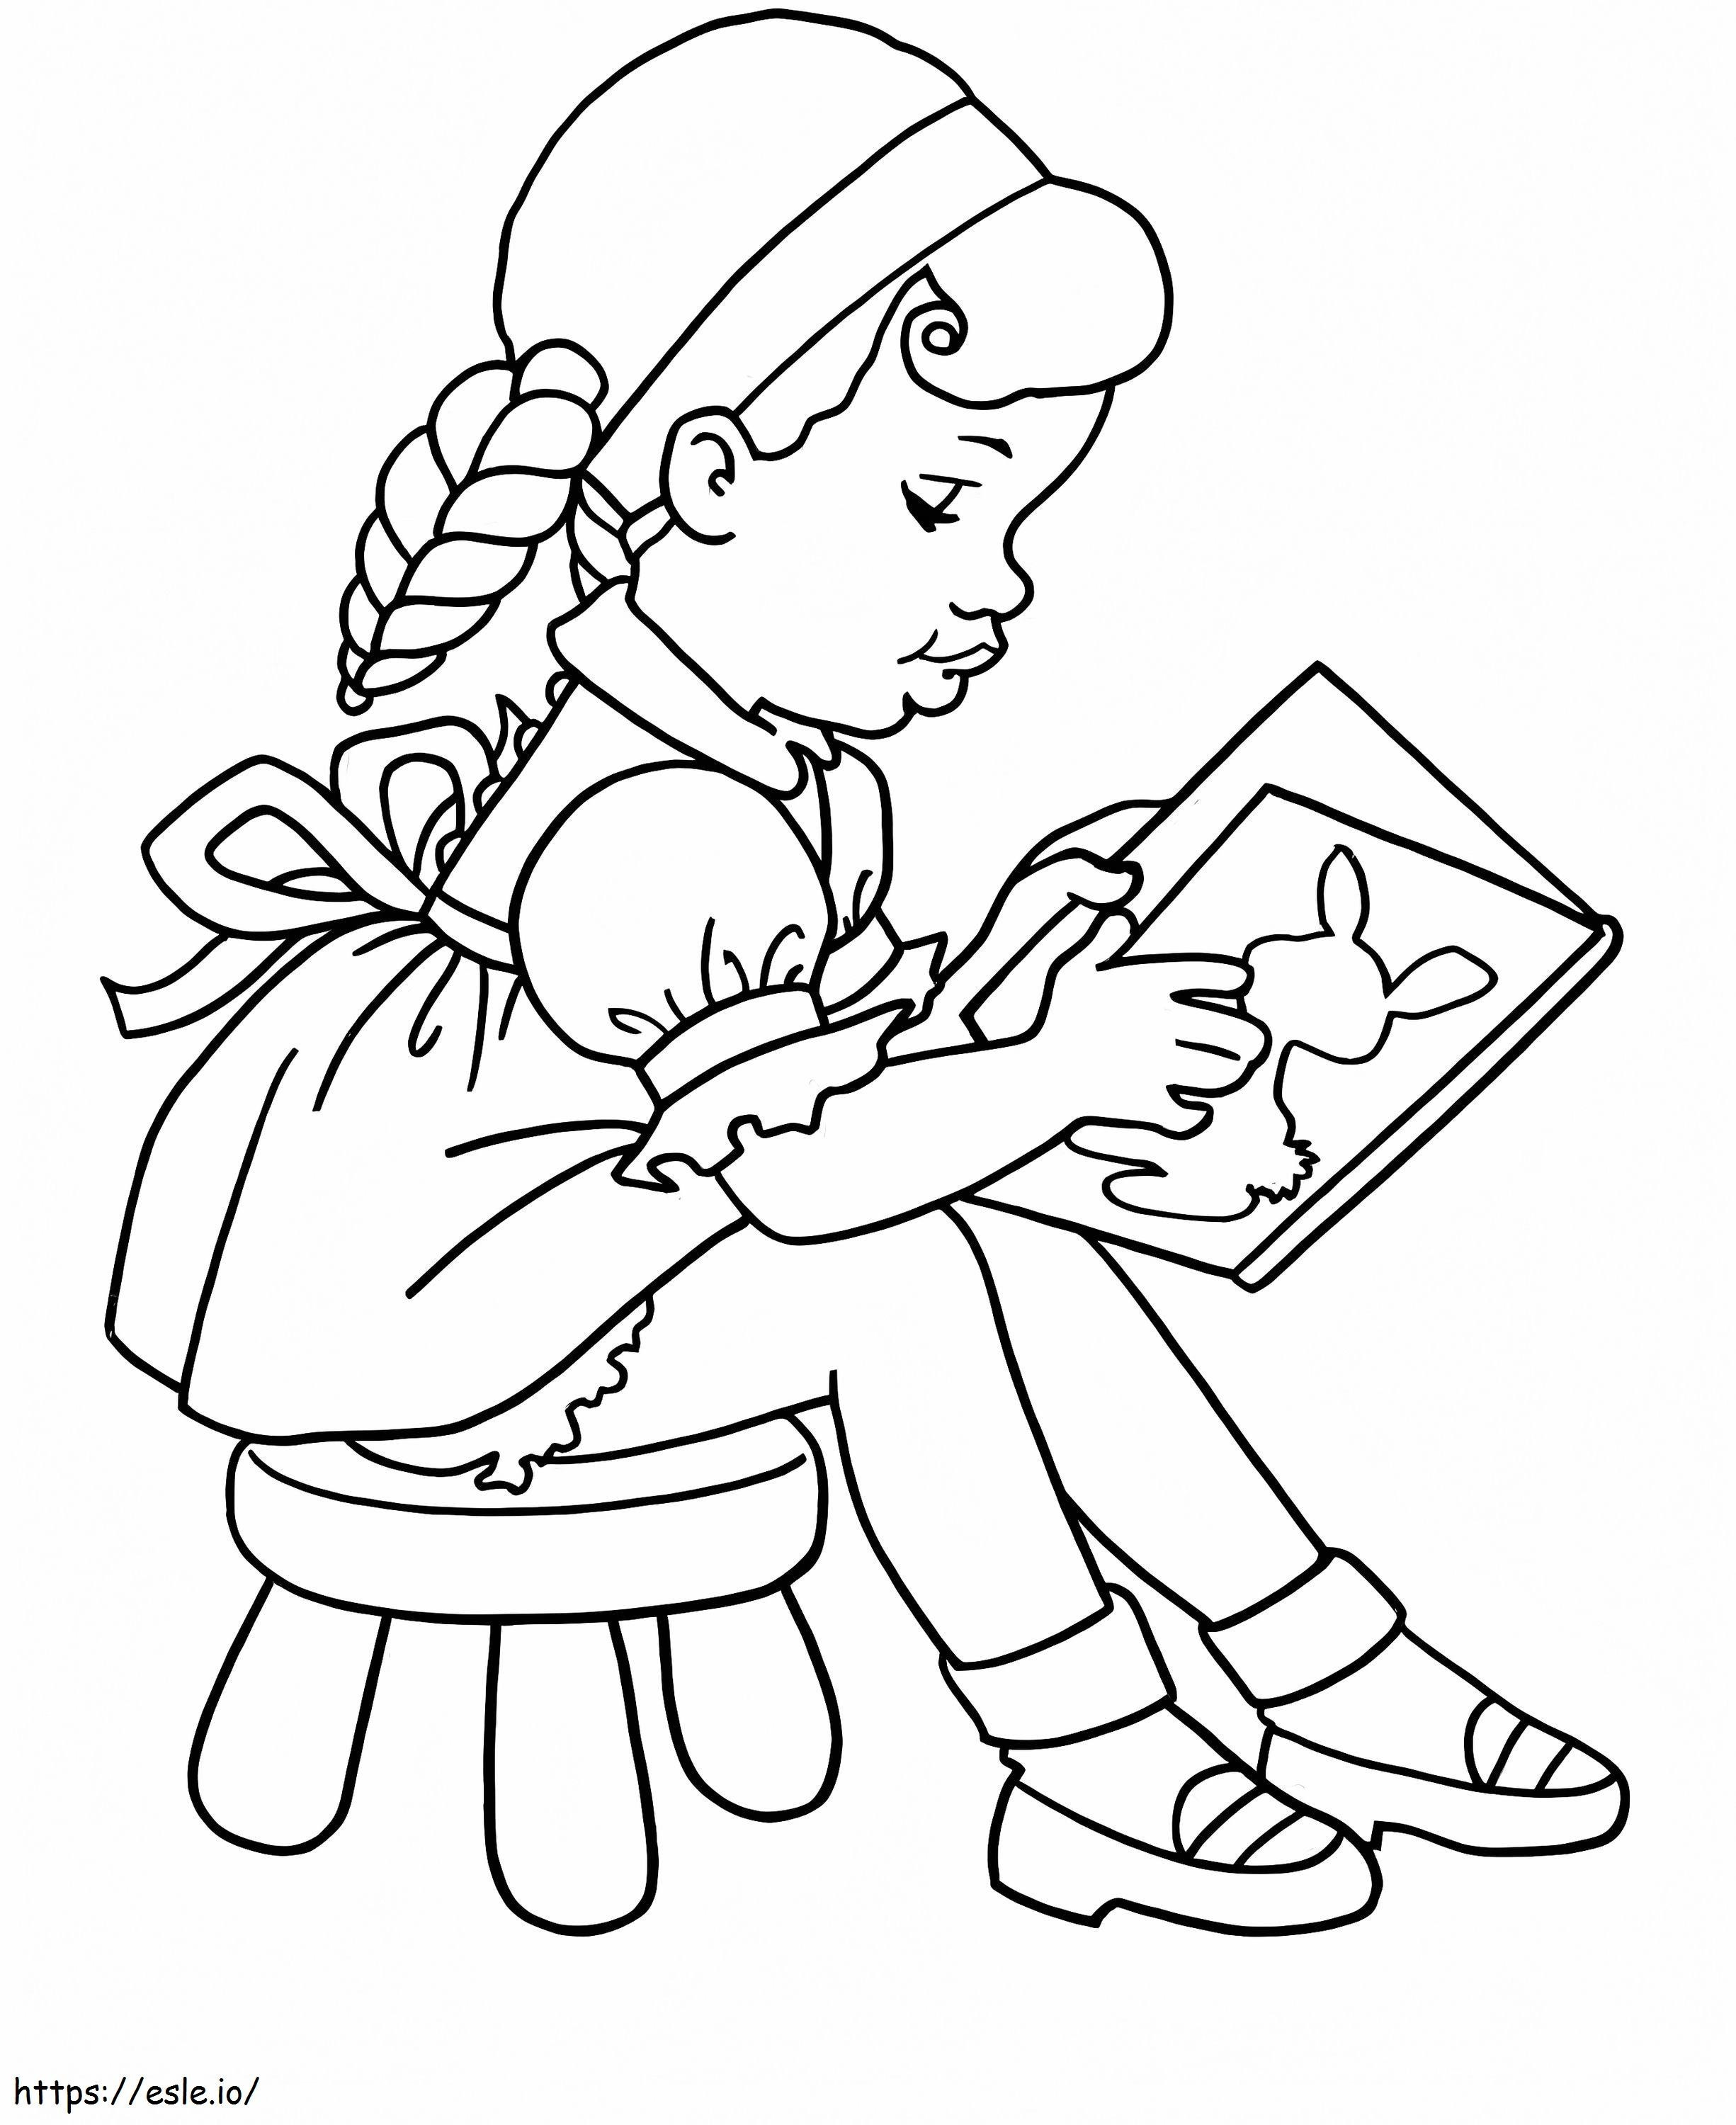 Nina leyendo un libro en la escuela para colorear